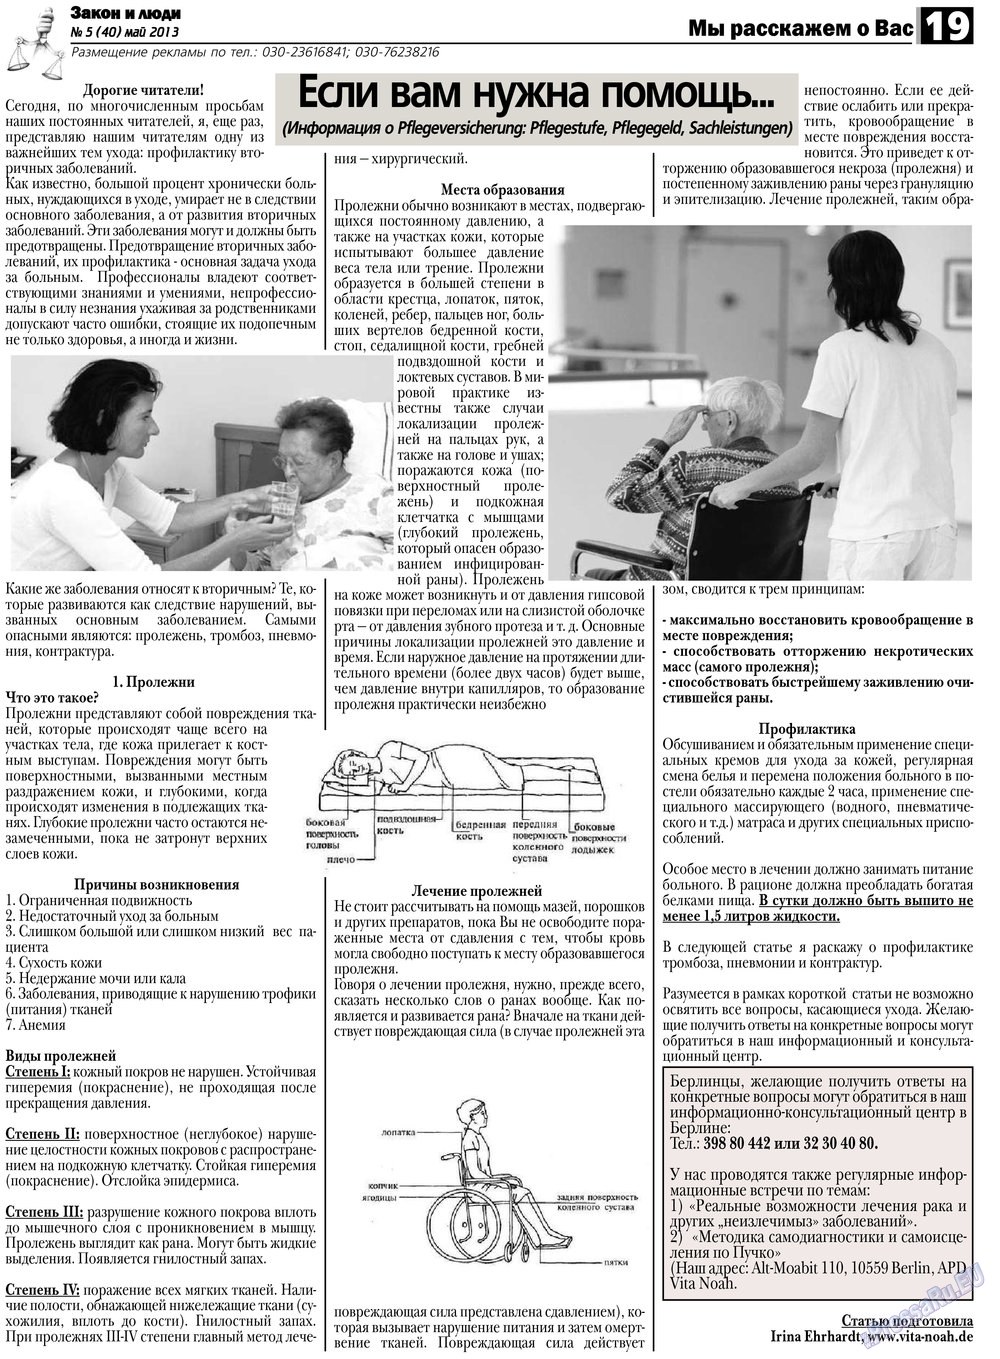 Закон и люди, газета. 2013 №5 стр.19